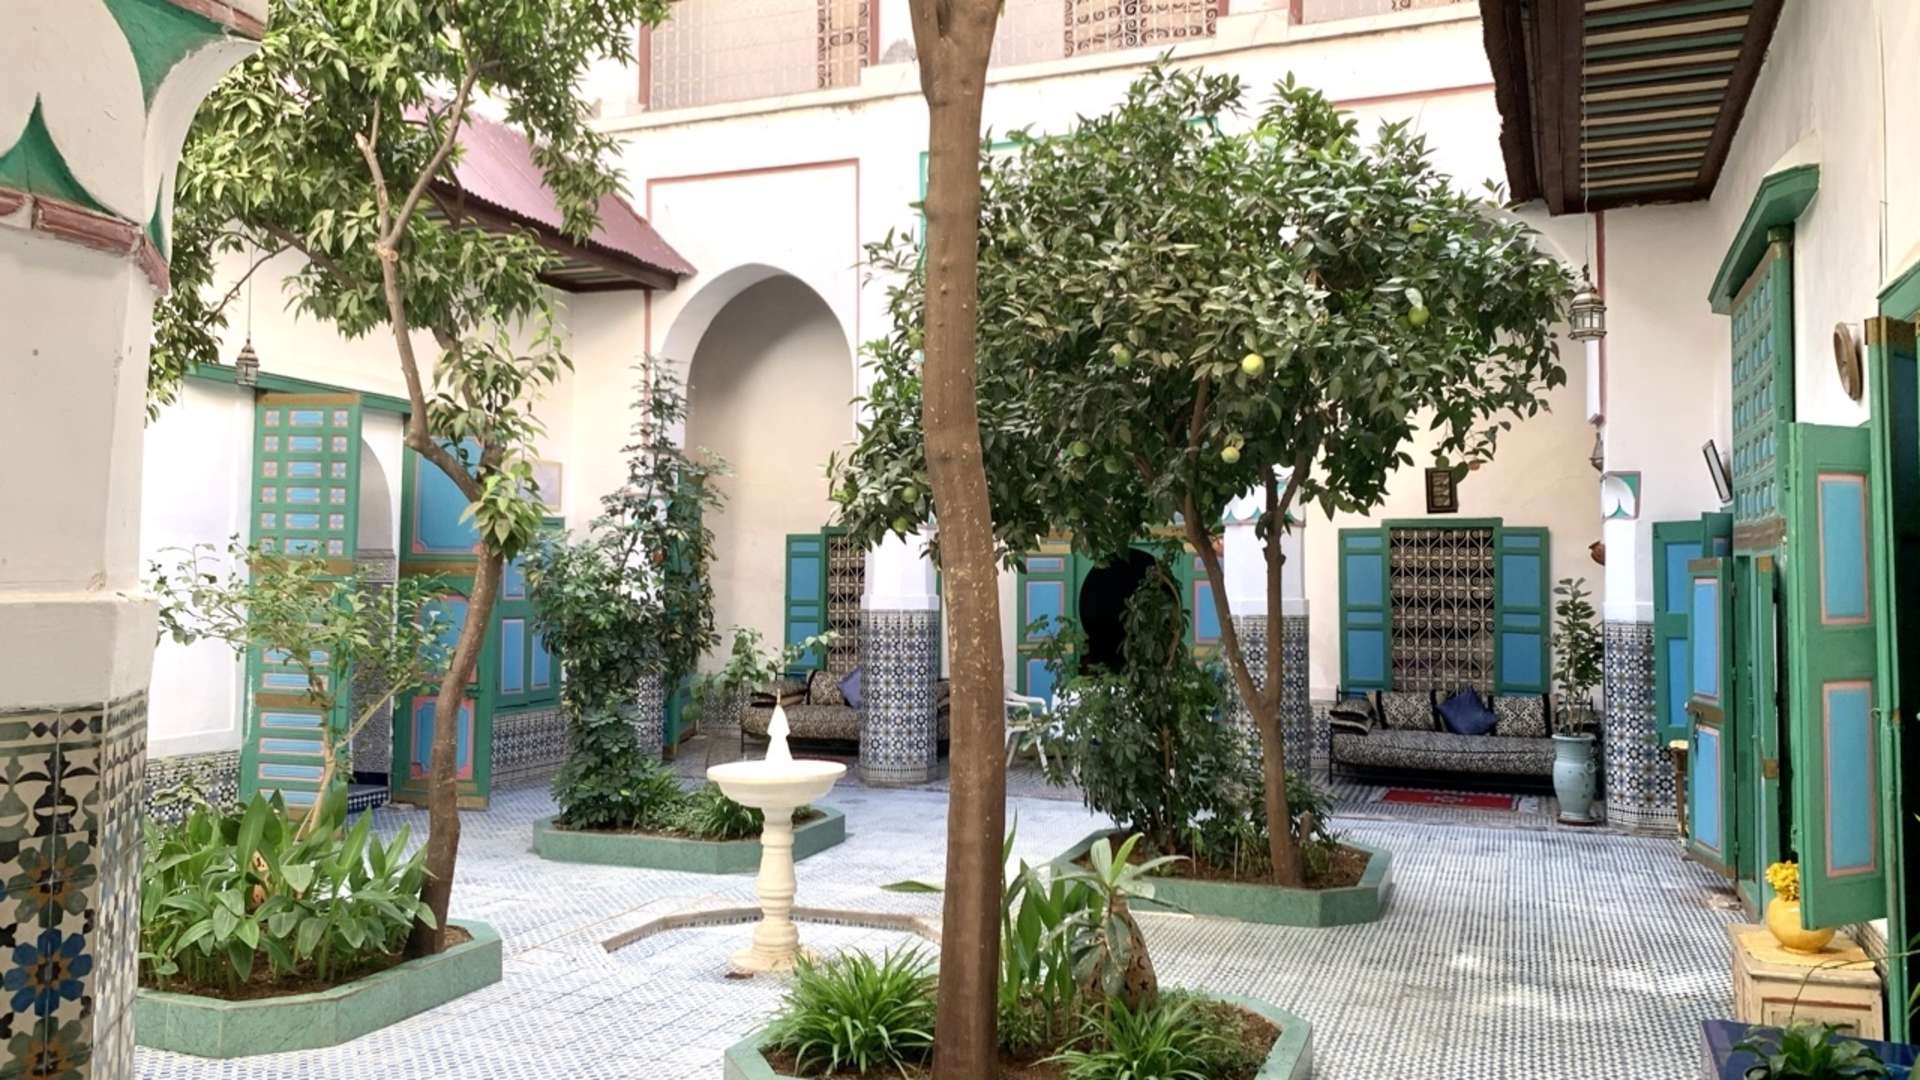 Vente,Riad,Somptueux riad à vendre à Marrakech. 9 pièces. Jardin et terrasse,Marrakech,Médina